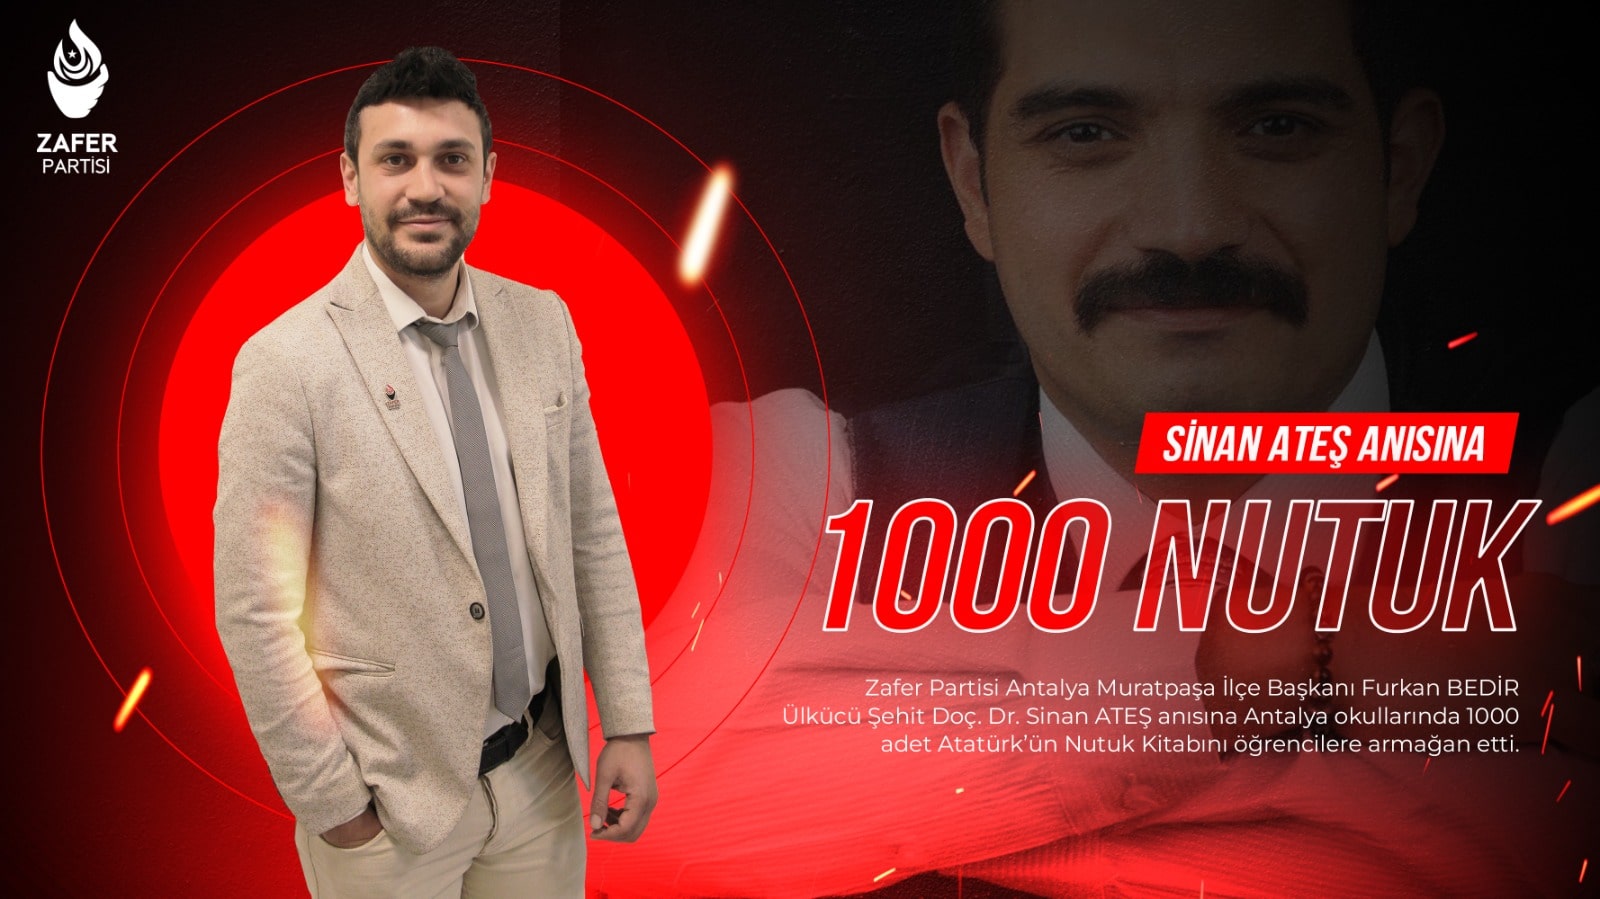 Muratpaşa İlçe Başkanı Furkan Bedir ‘’Antalya okullarında Sinan Ateş anısına 1000 adet Nutuk Kitabı Dağıttı